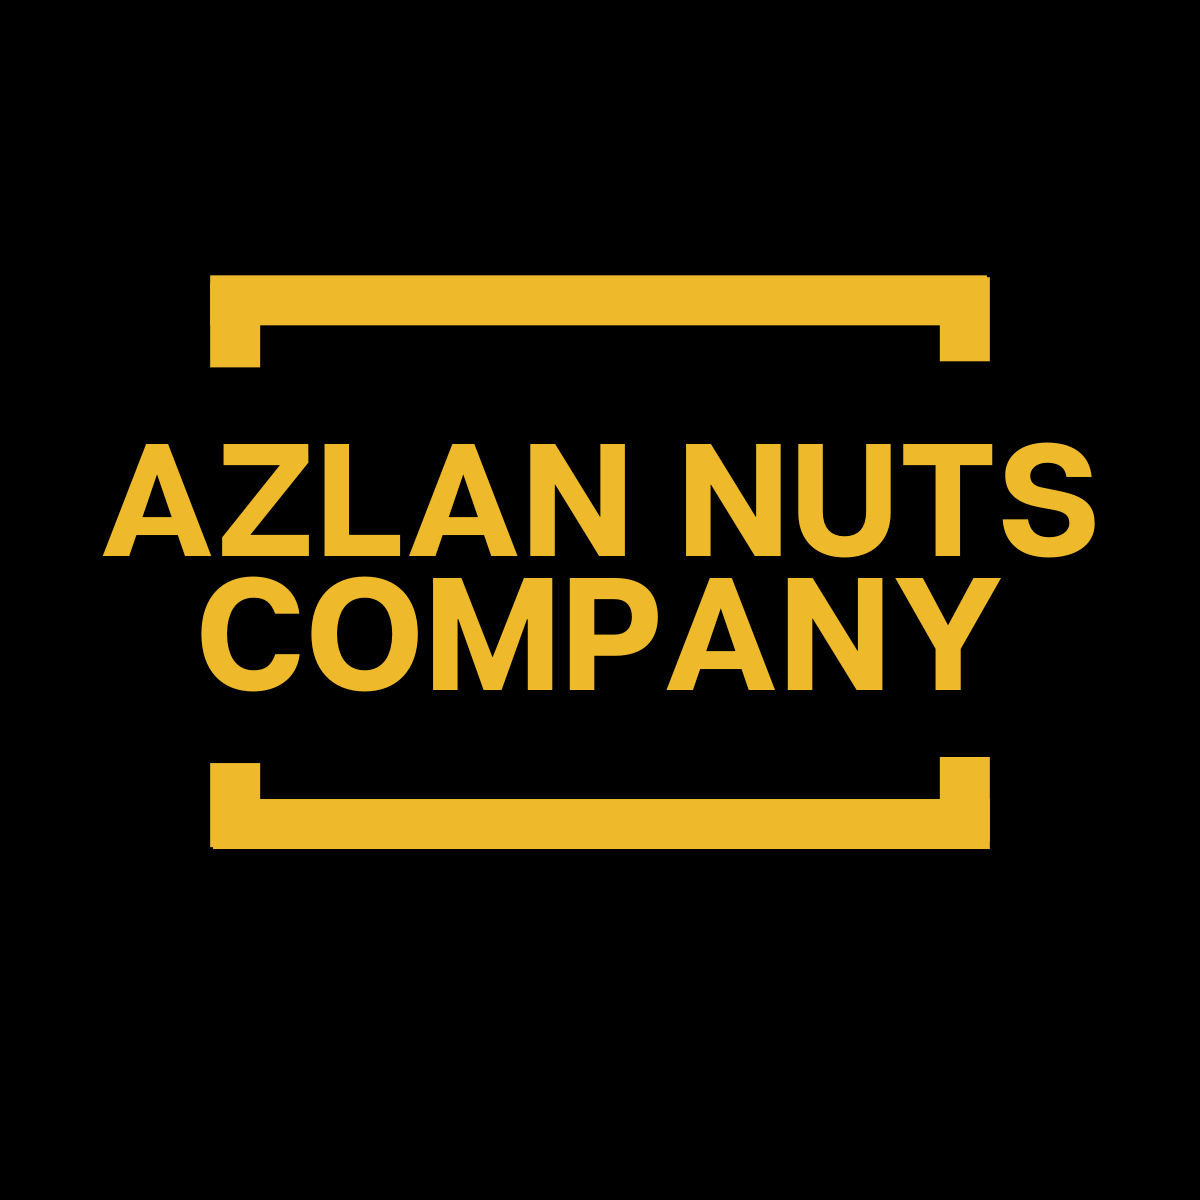 AZLAN NUTS COMPANY